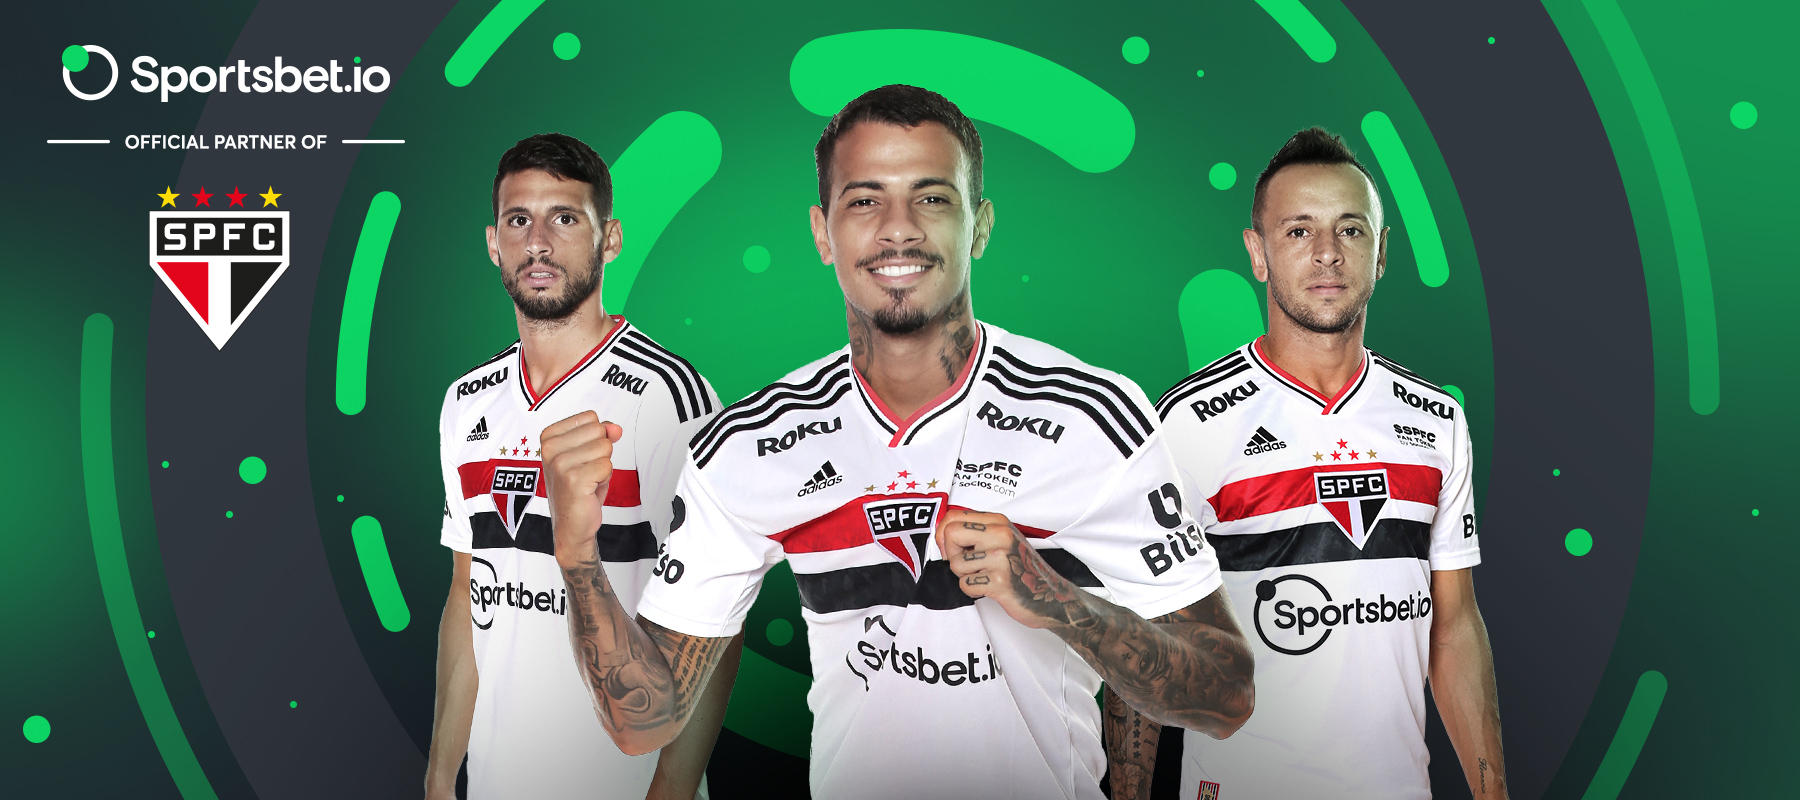 Conheça os parceiros do Sportsbet.io: São Paulo FC